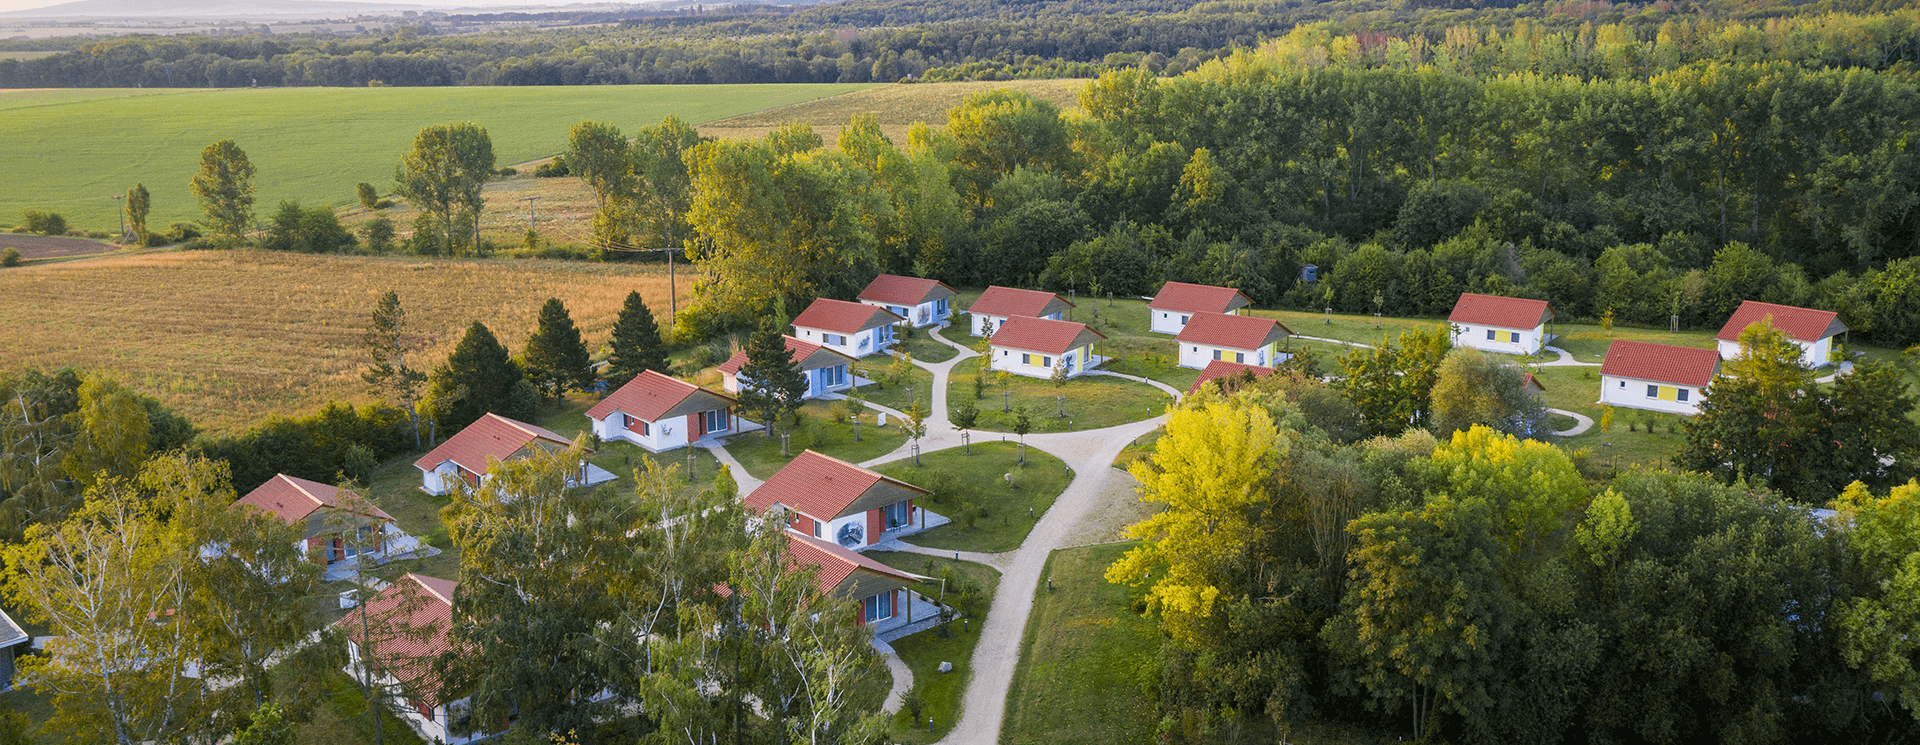 Ferienhauser von oben umgebenvon grüner Natur